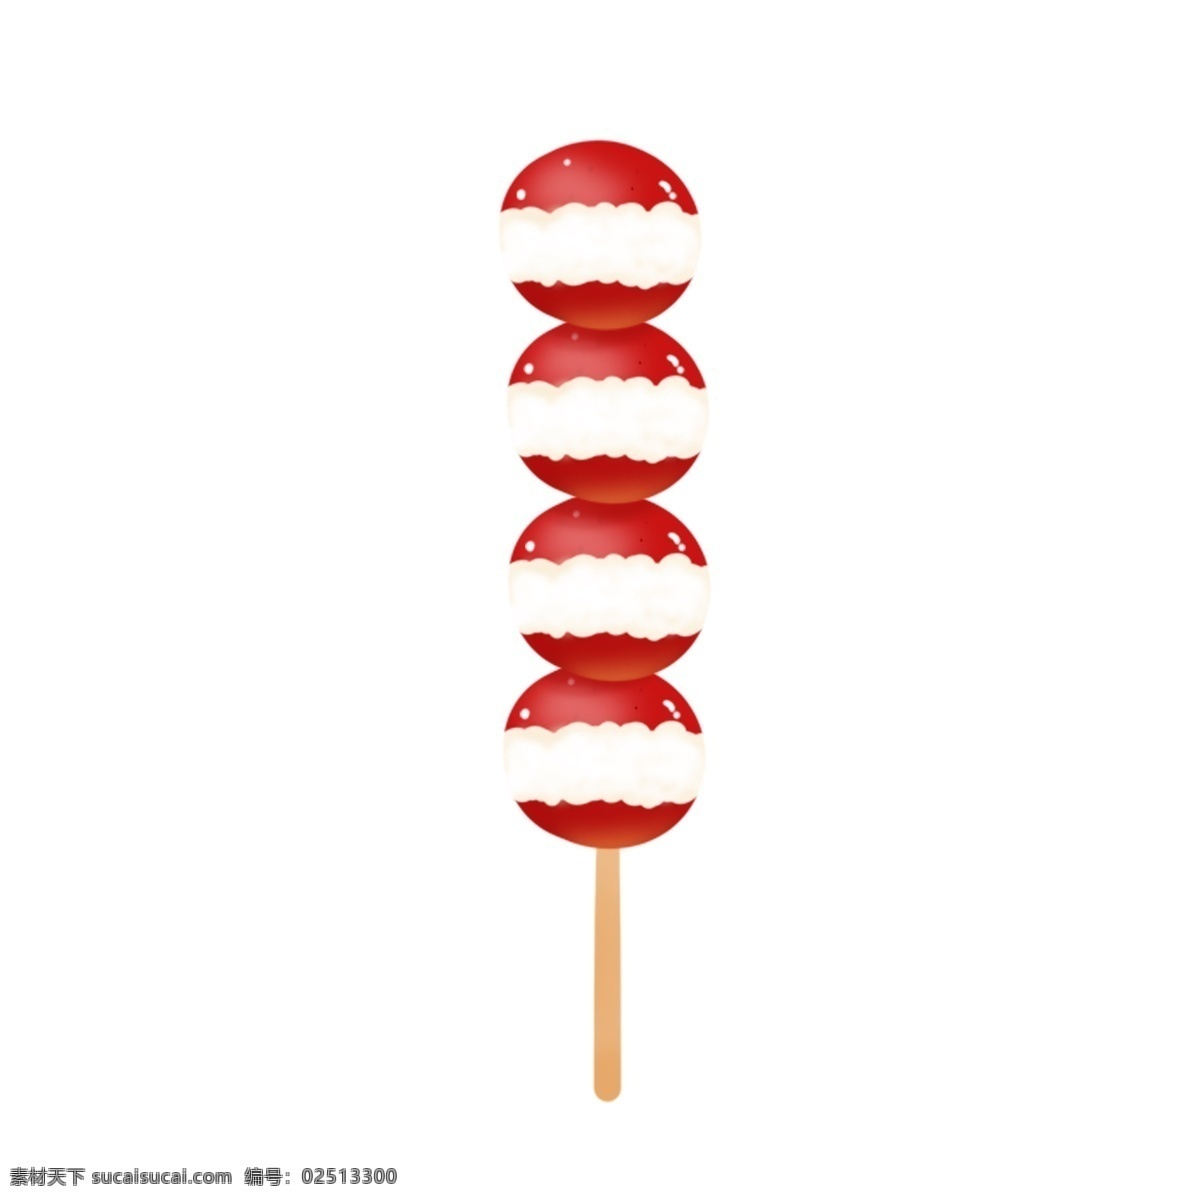 中国 风 冰糖葫芦 美食 橘子 山楂 传统 手绘 商用 红色 甜品 插画 回忆